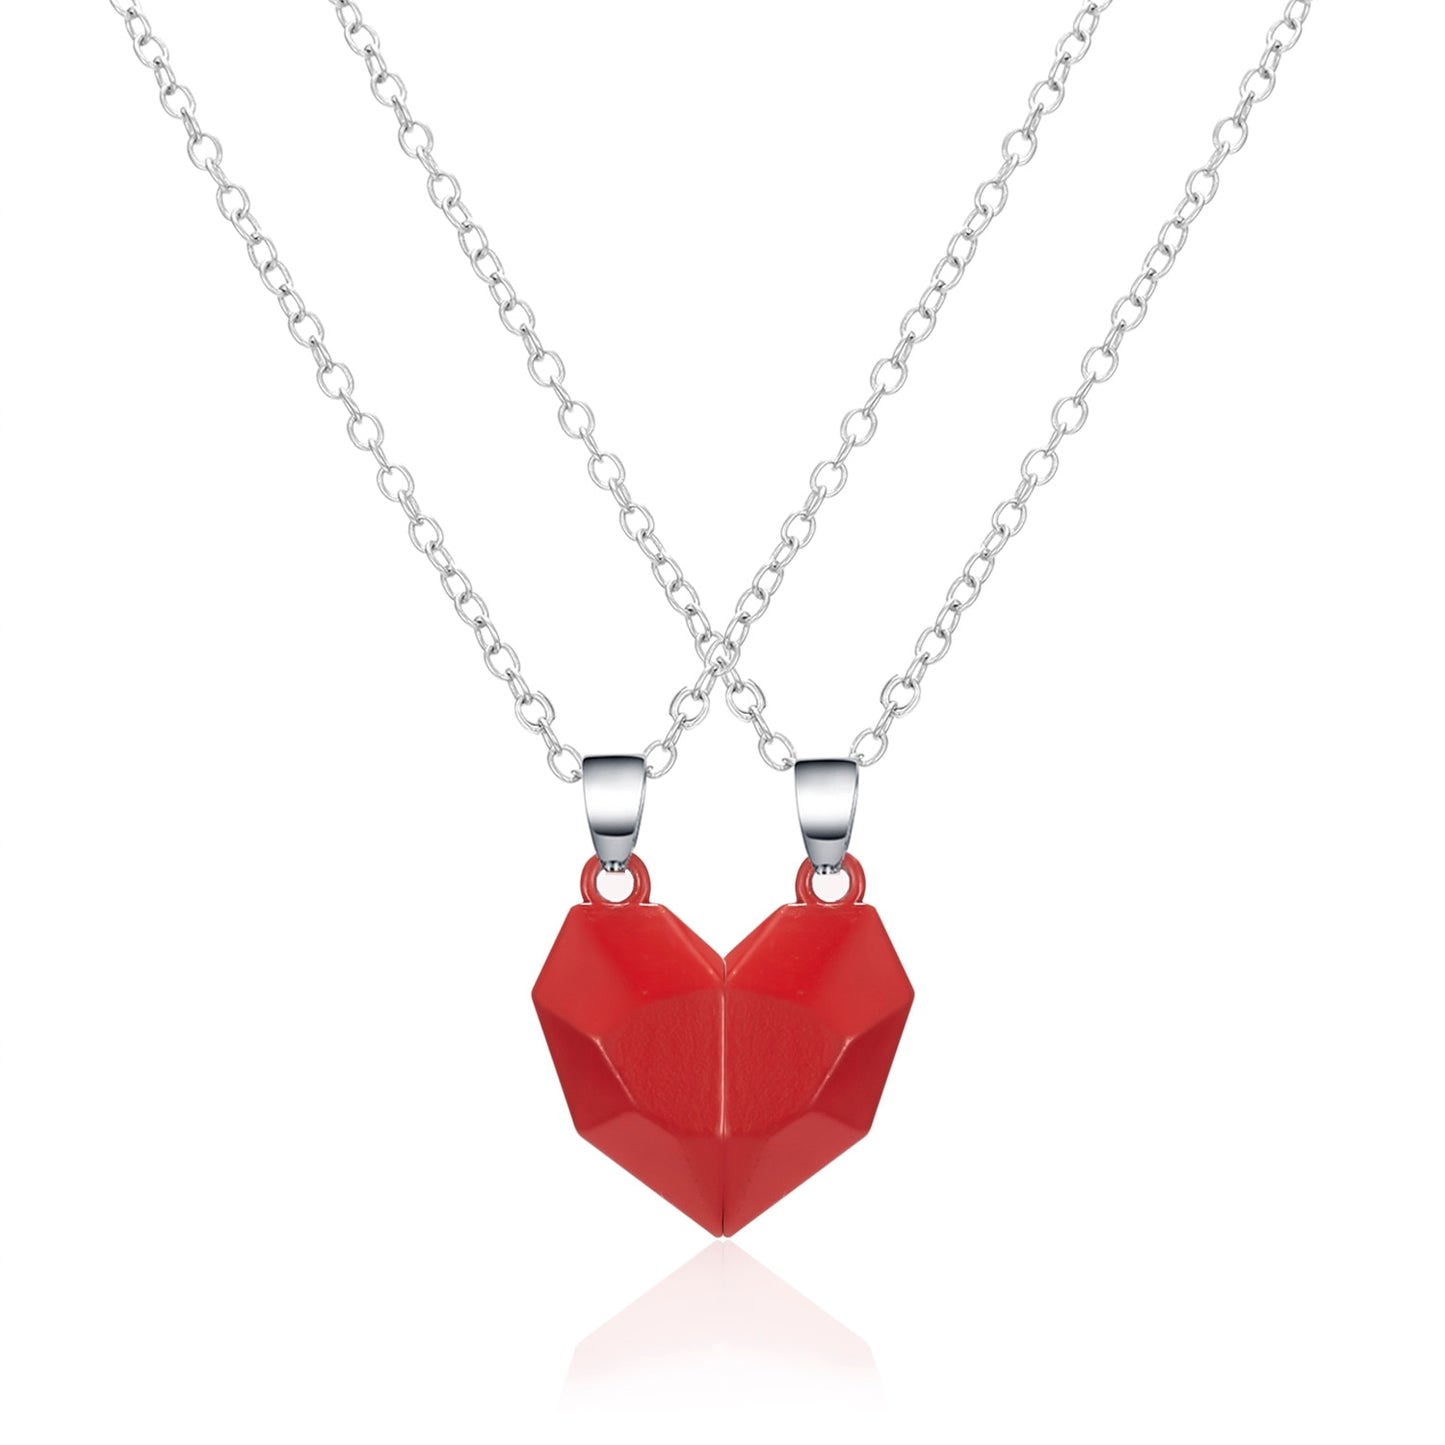 Magnetic Couple Necklace Friendship Heart Pendant